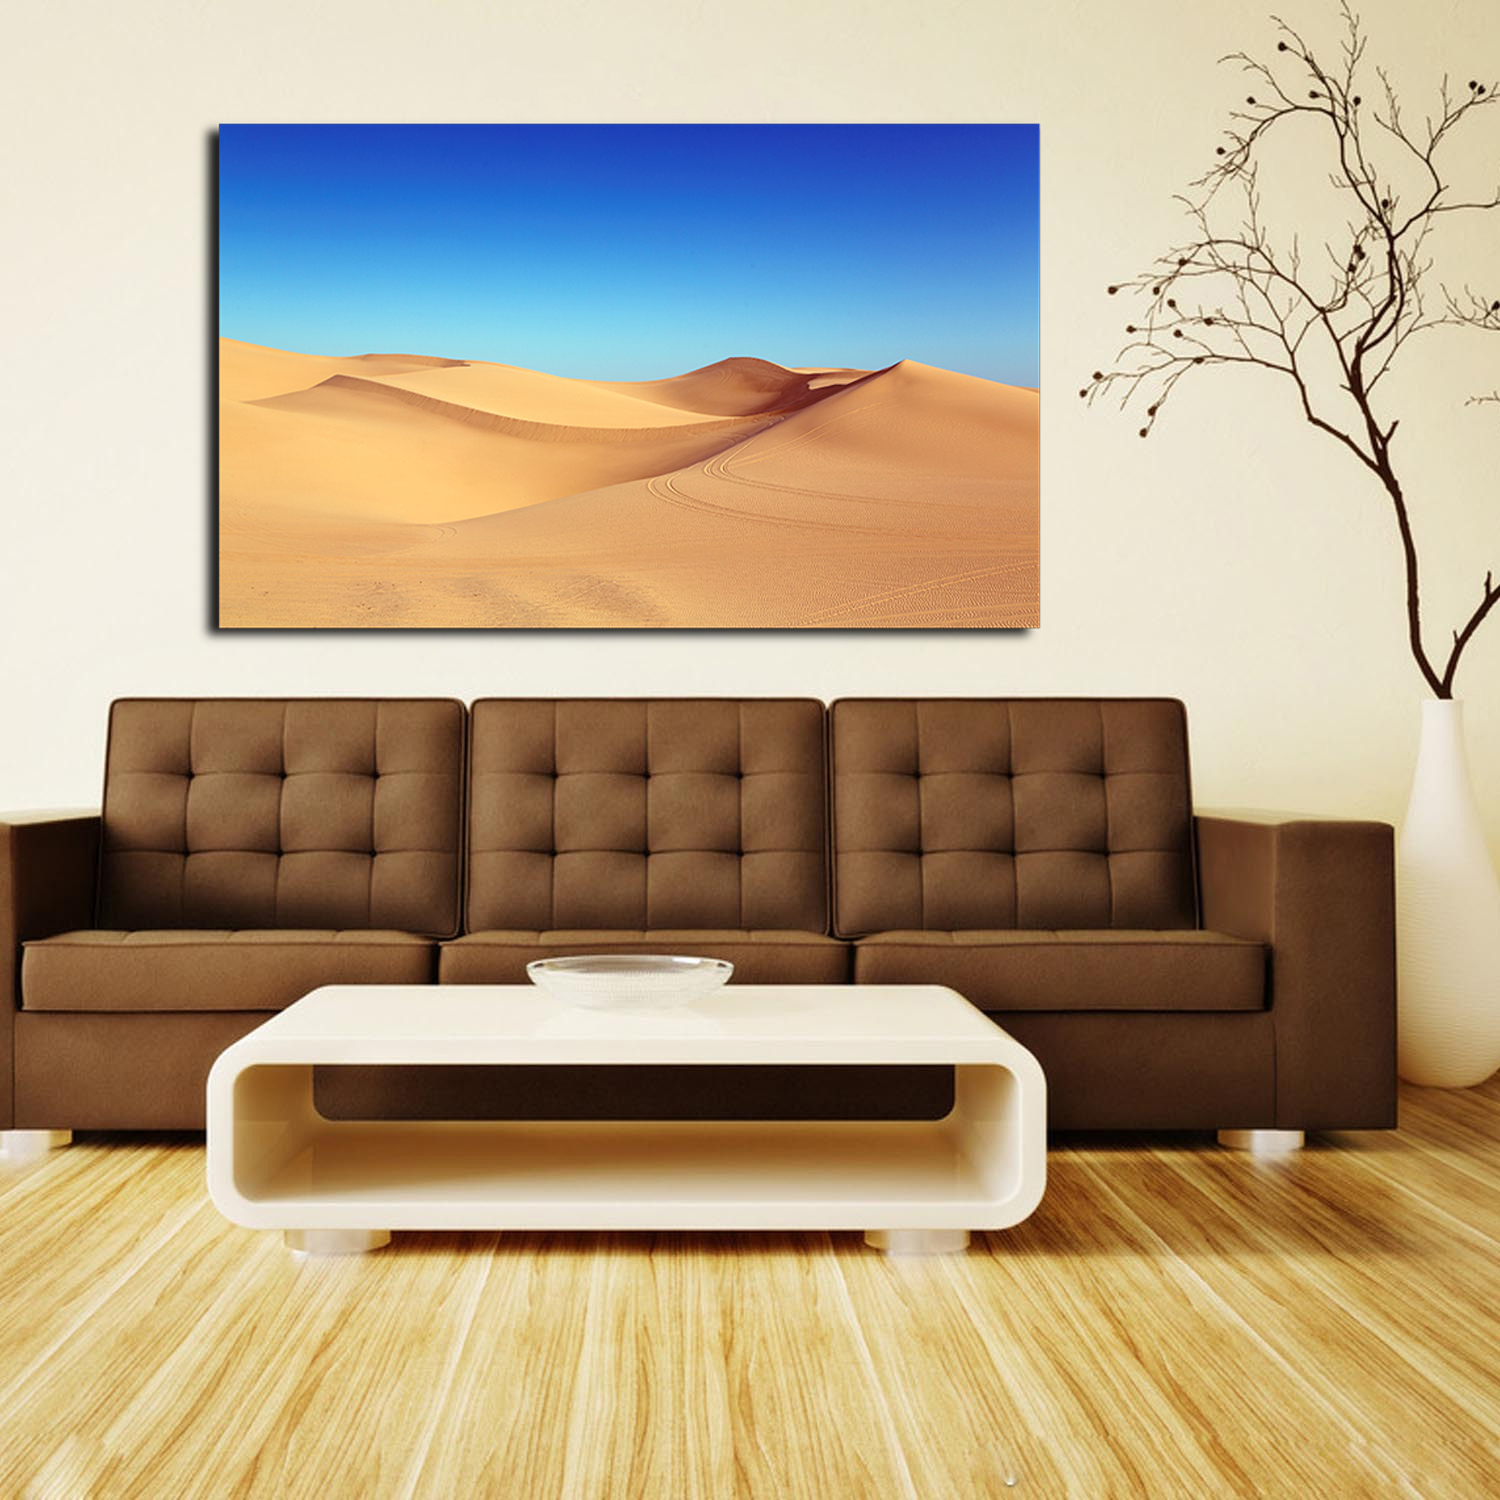 Desert Dunes Blue Sky Wall Art Desert Sunset Picture Canvas Art Sand Dunes Framed  Painting Wall Decor For Home Office Bedroom Livingroom Ready to Hang 